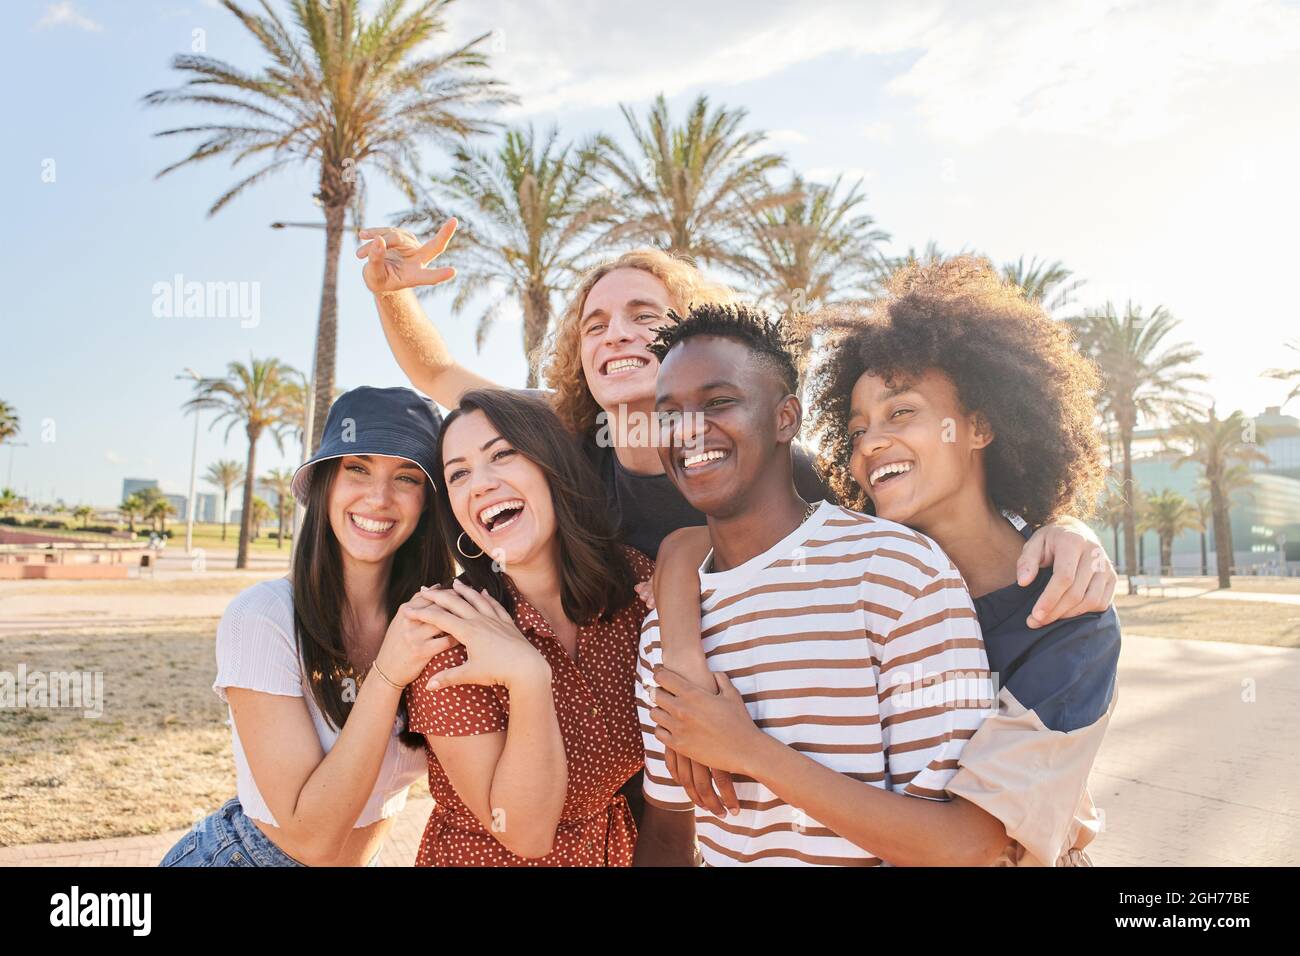 Gruppe von schönen kaukasischen und afroamerikanischen Menschen, die eine gute Zeit miteinander haben. Konzept von Gleichheit, gemischter Rasse, jungen Freunden, Studenten. Stockfoto